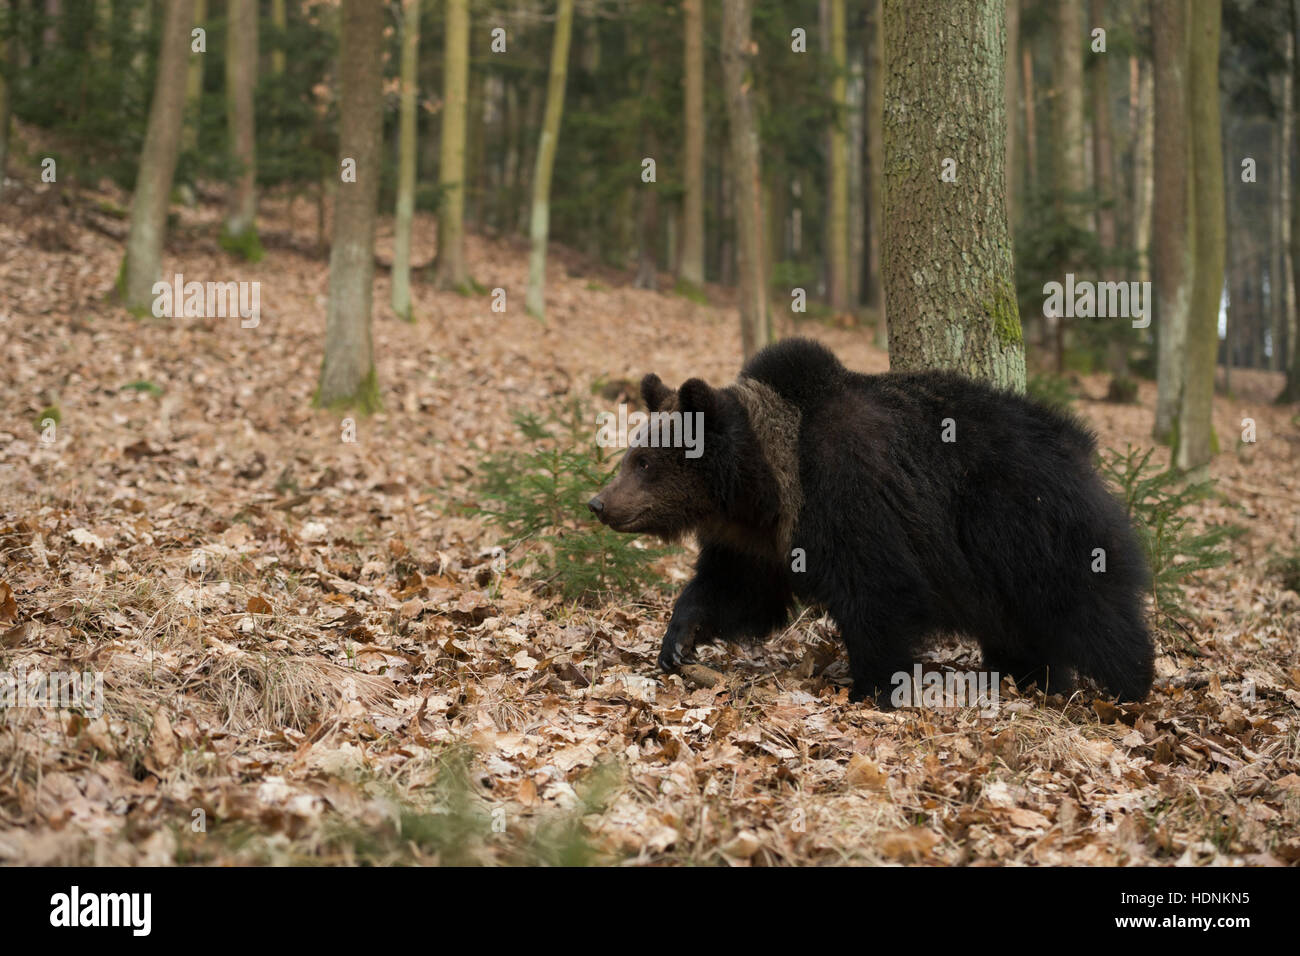 Unione orso bruno / Braunbaer ( Ursus arctos ), giovani, camminando / il roaming attraverso una foresta, esplorare le zone circostanti. Foto Stock